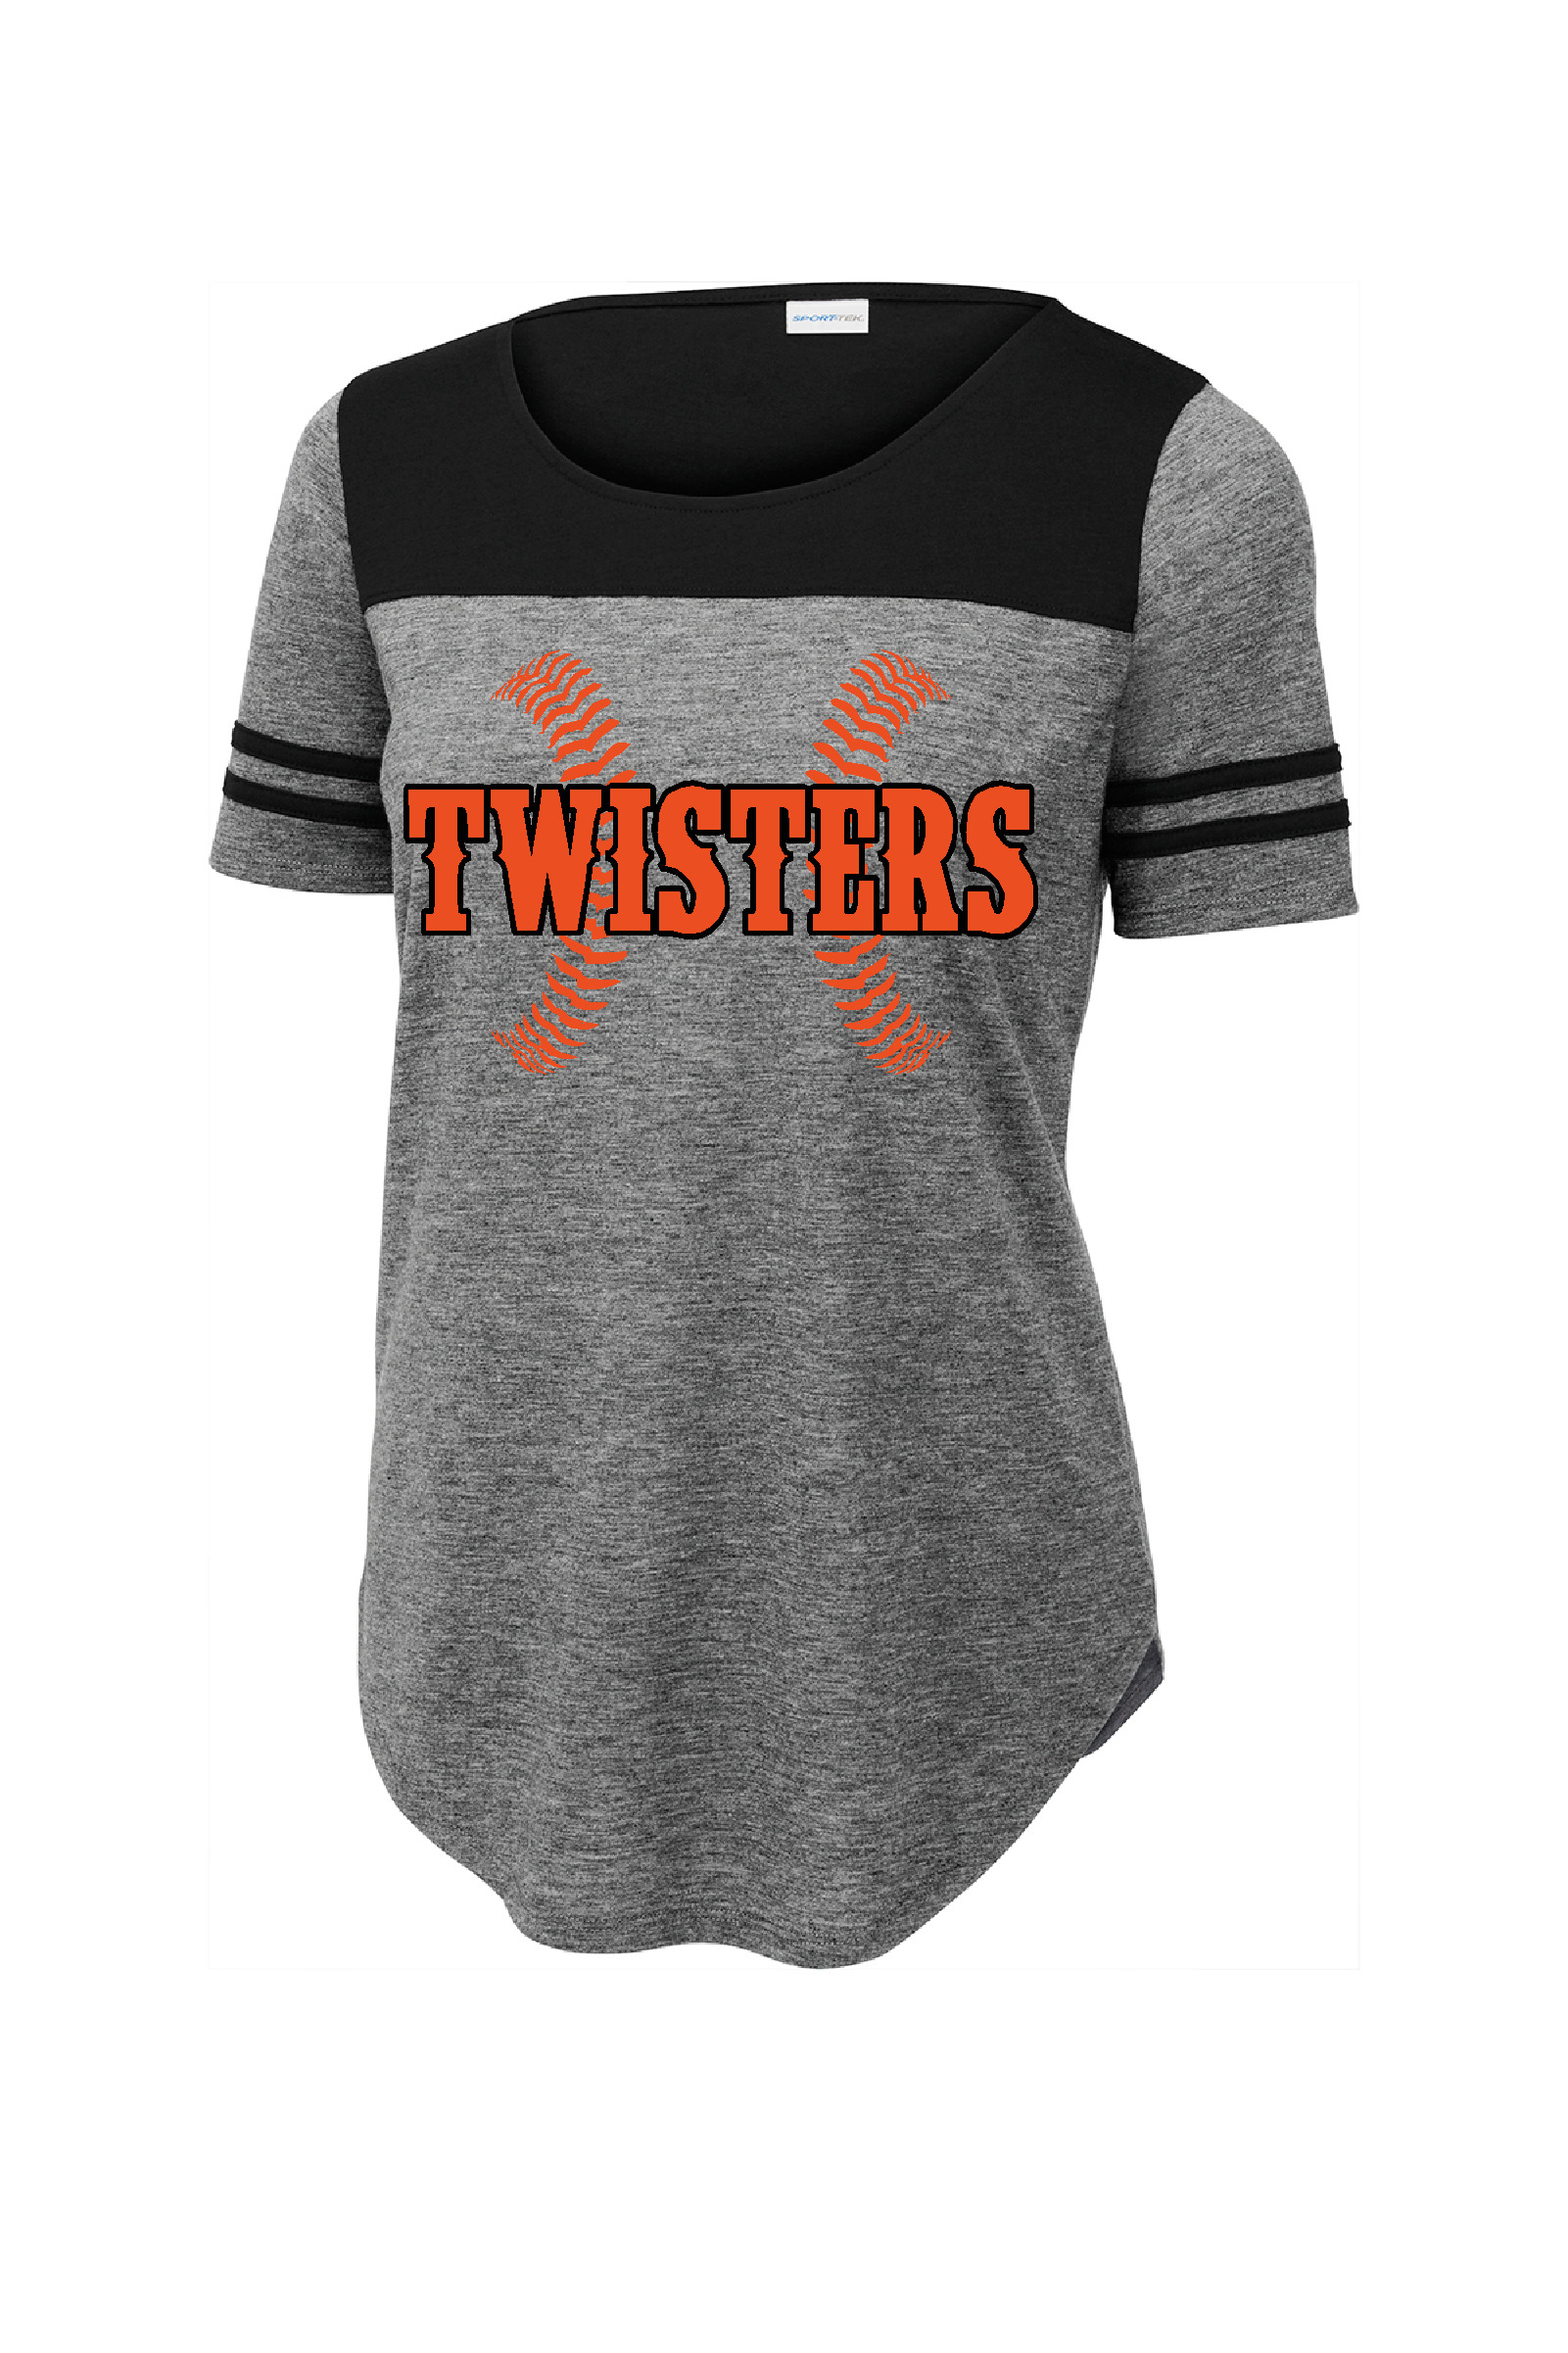 Twisters Ladies Fan Tee – LogoWorks Design